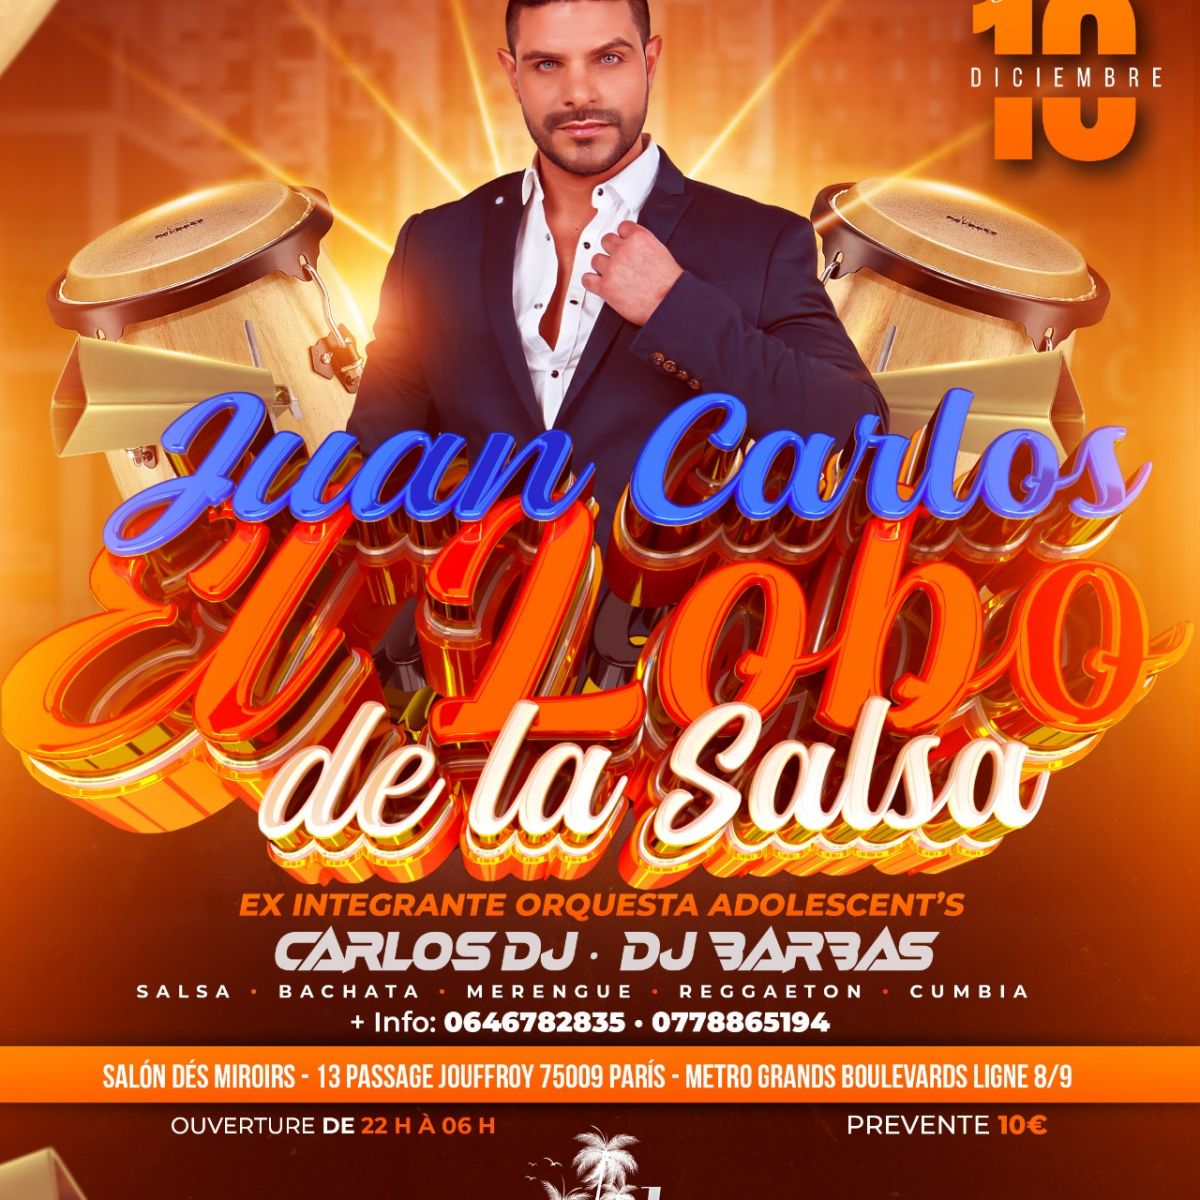 Soirée Latino : Showcase Juan Carlos ¨El Lobo de la Salsa ¨ ex-membre du groupe original "Adolescent's Orquesta"